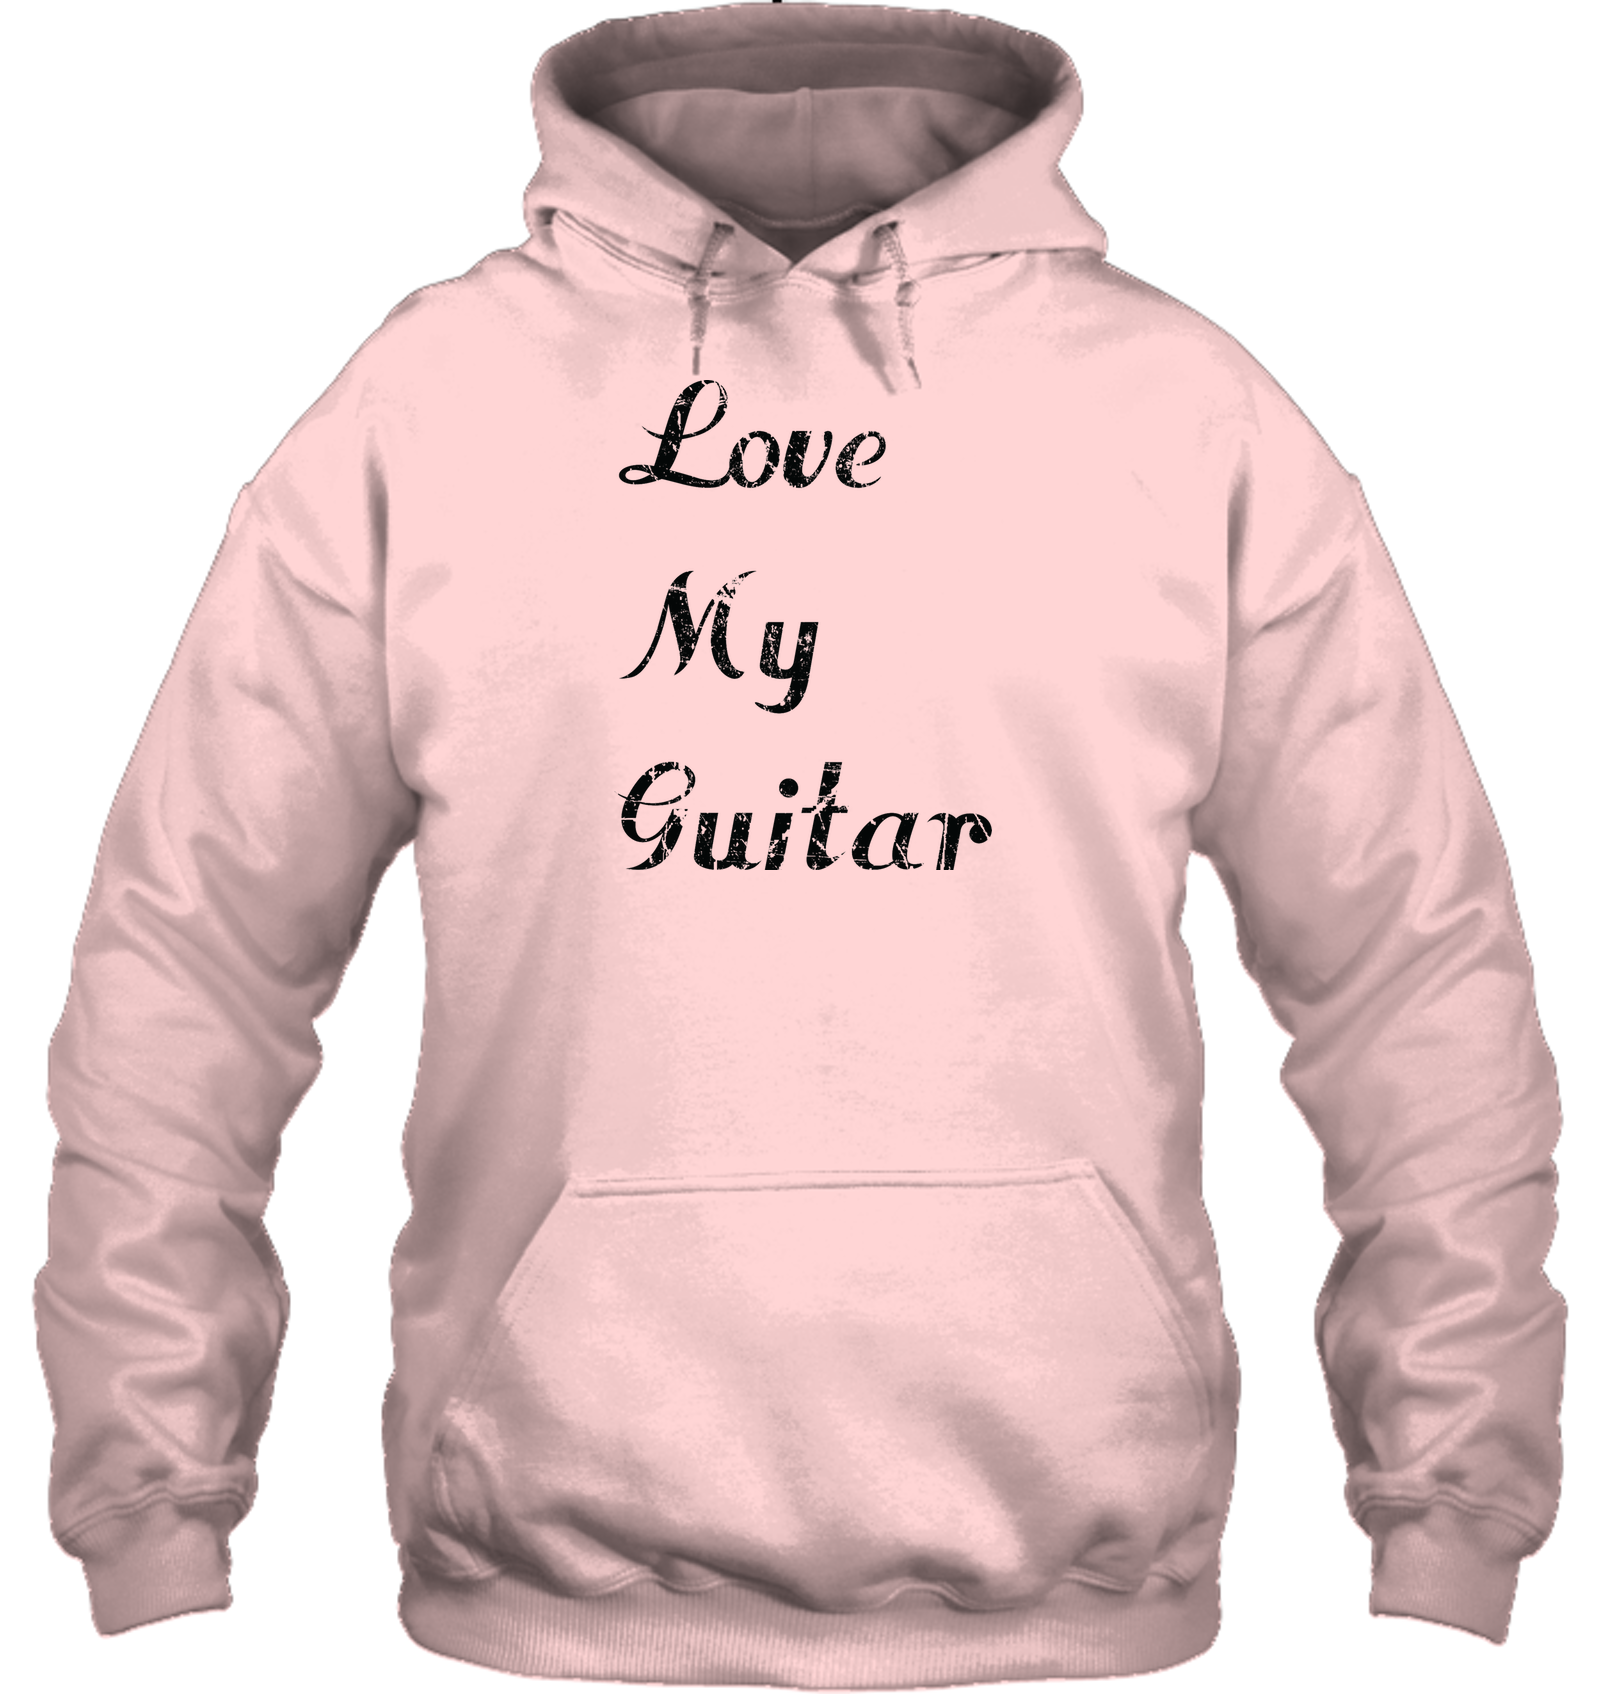 Love My Guitar simple and true - Gildan Adult Heavy Blend™ Hoodie